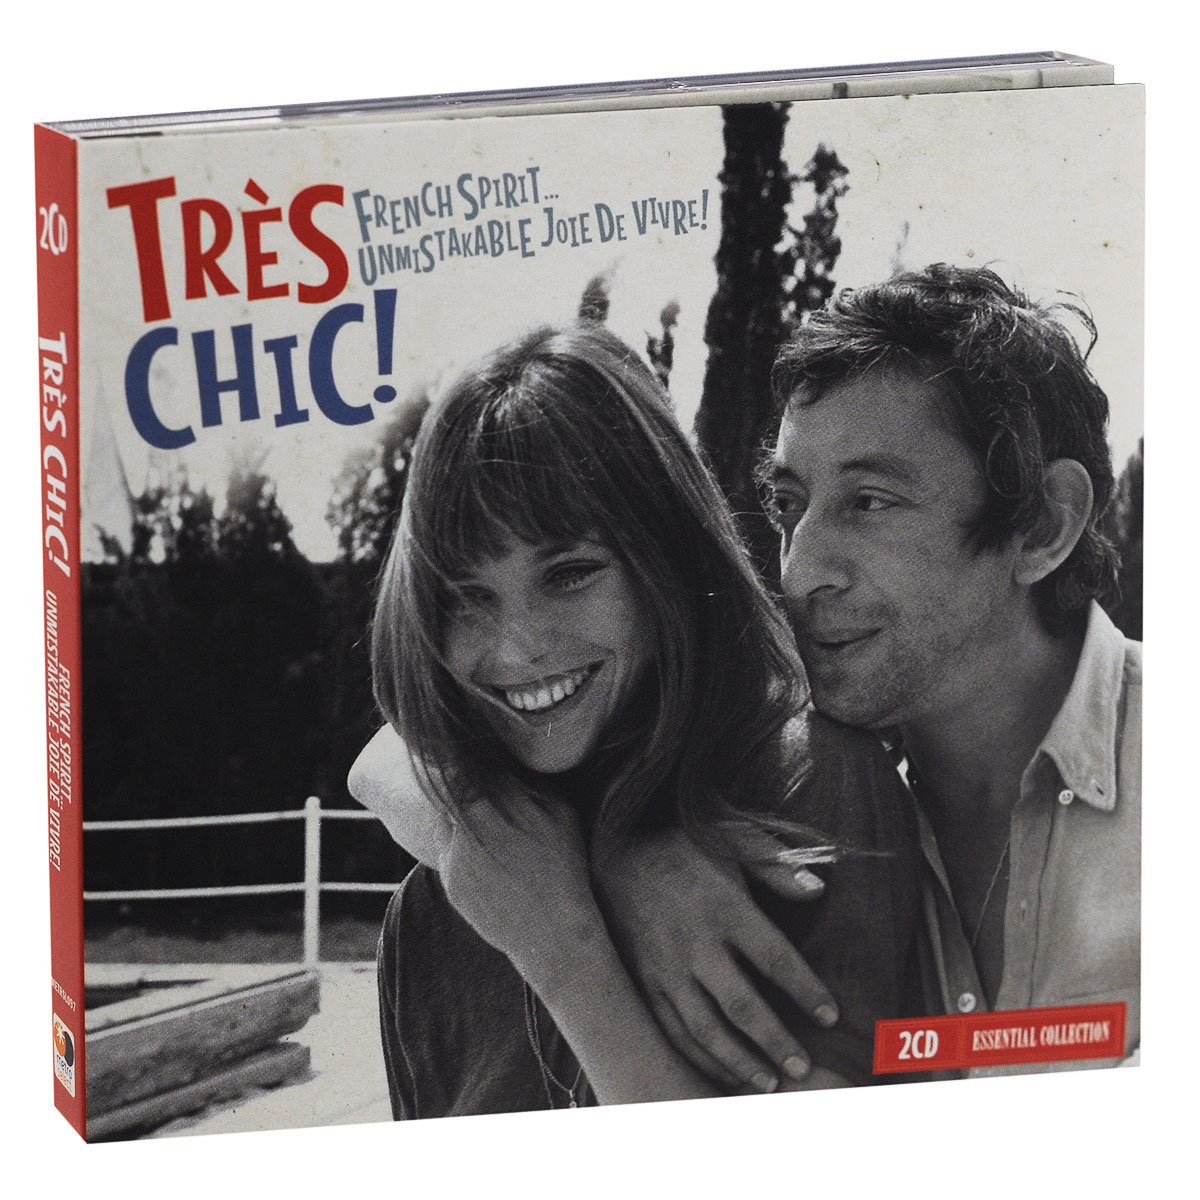 Tres Chic. French Spirit...Unmistakable Jole De Vivre! (2 CD)